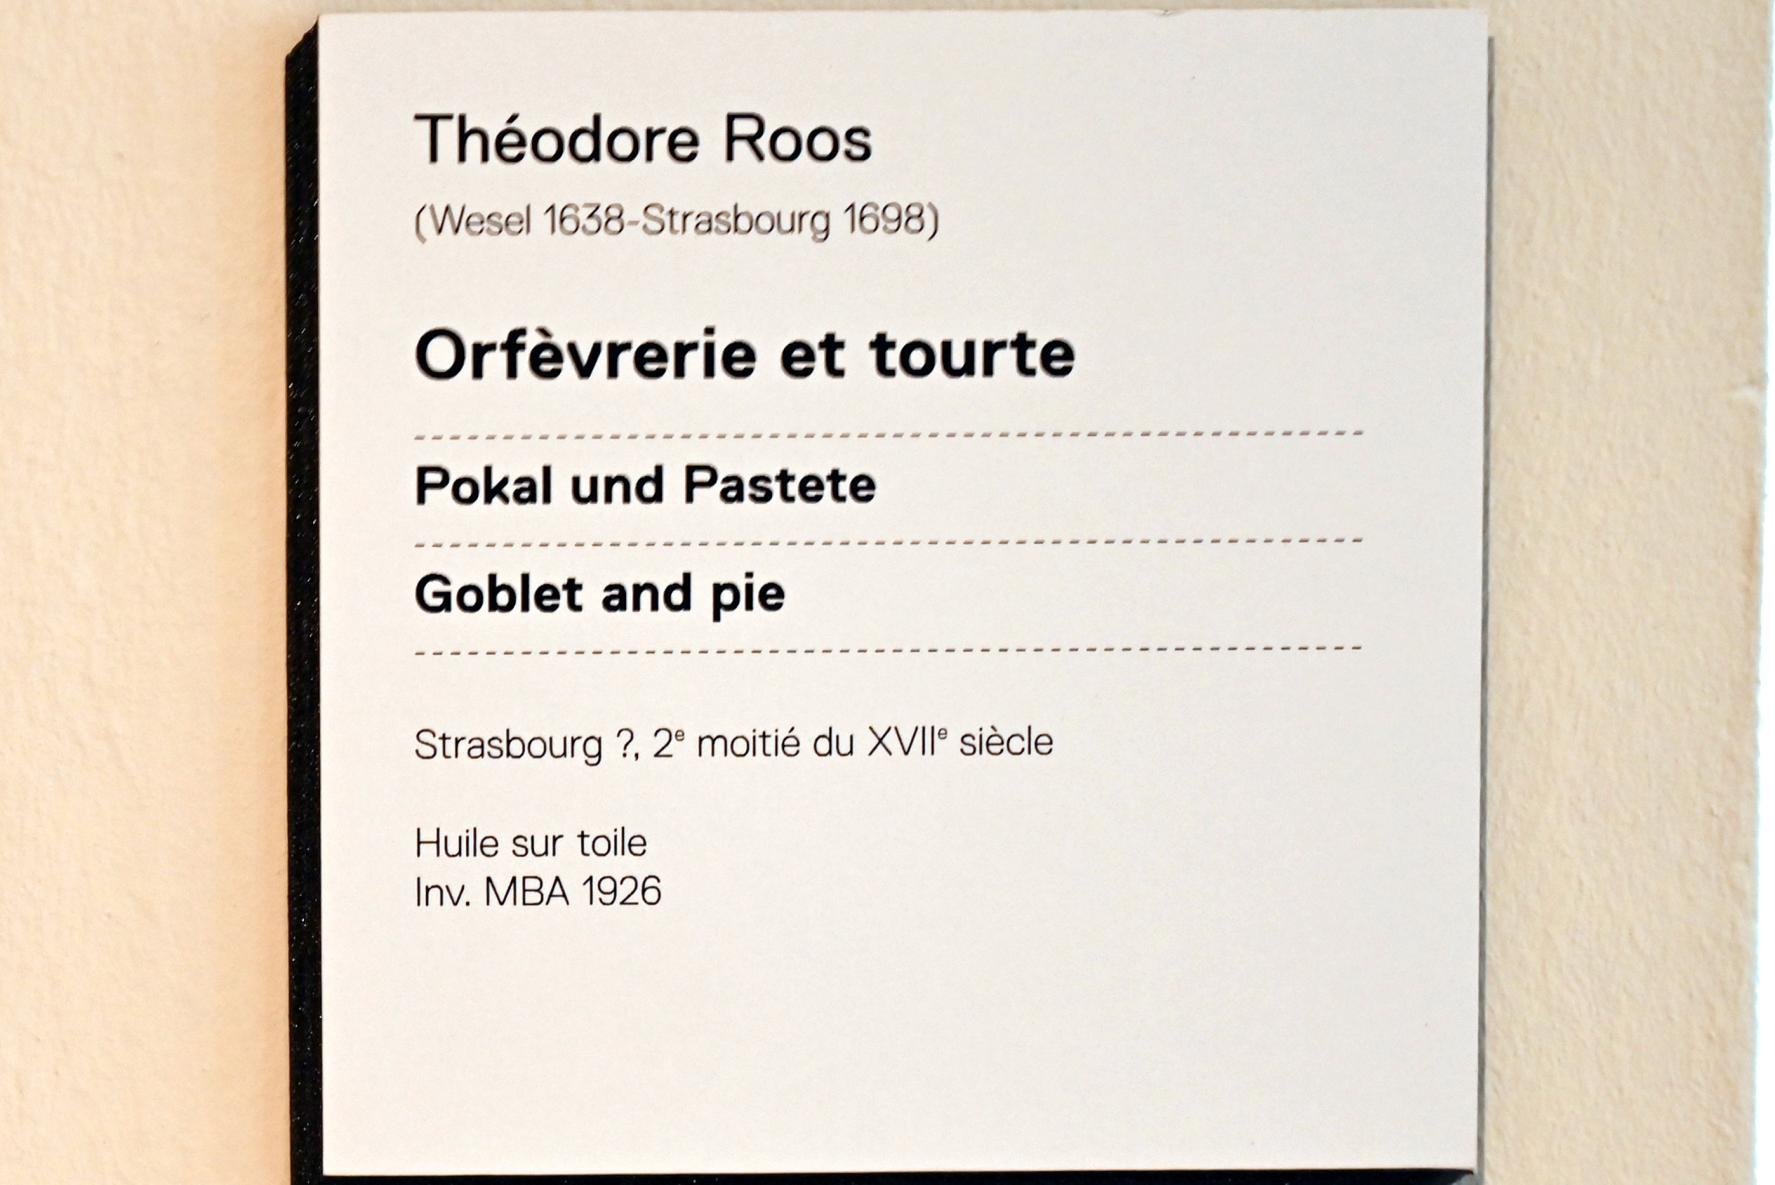 Theodor Roos (1698), Stillleben mit Pokal und Pastete, Straßburg, Musée de l’Œuvre Notre-Dame (Frauenhausmuseum), 2. Hälfte 17. Jhd., Bild 2/2